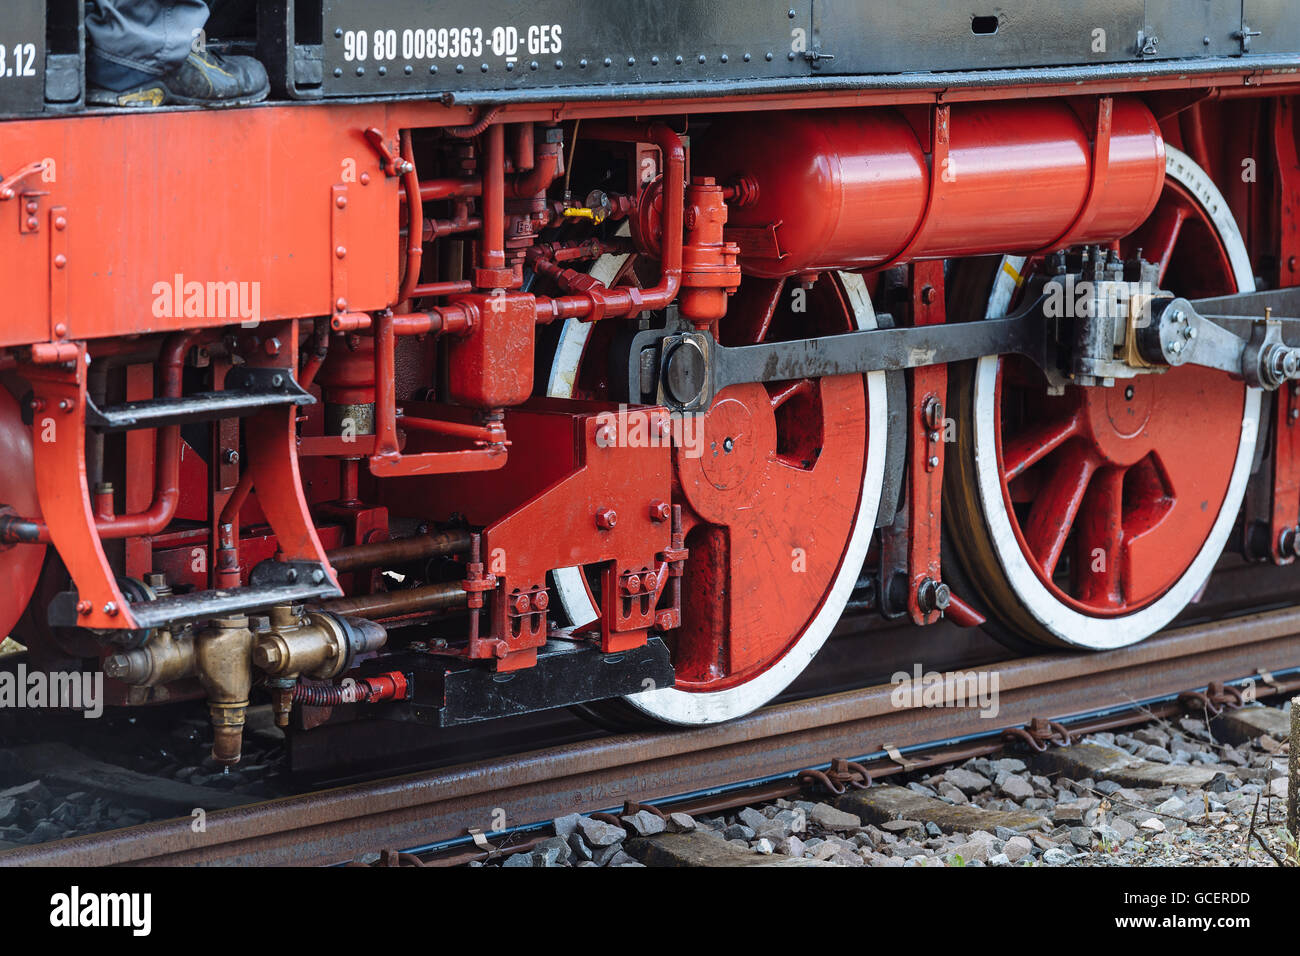 Des roues sur des rails de chemin de fer, détail, machine à vapeur historique Feuriger Elias, Korntal-Münchingen, Bade-Wurtemberg Banque D'Images